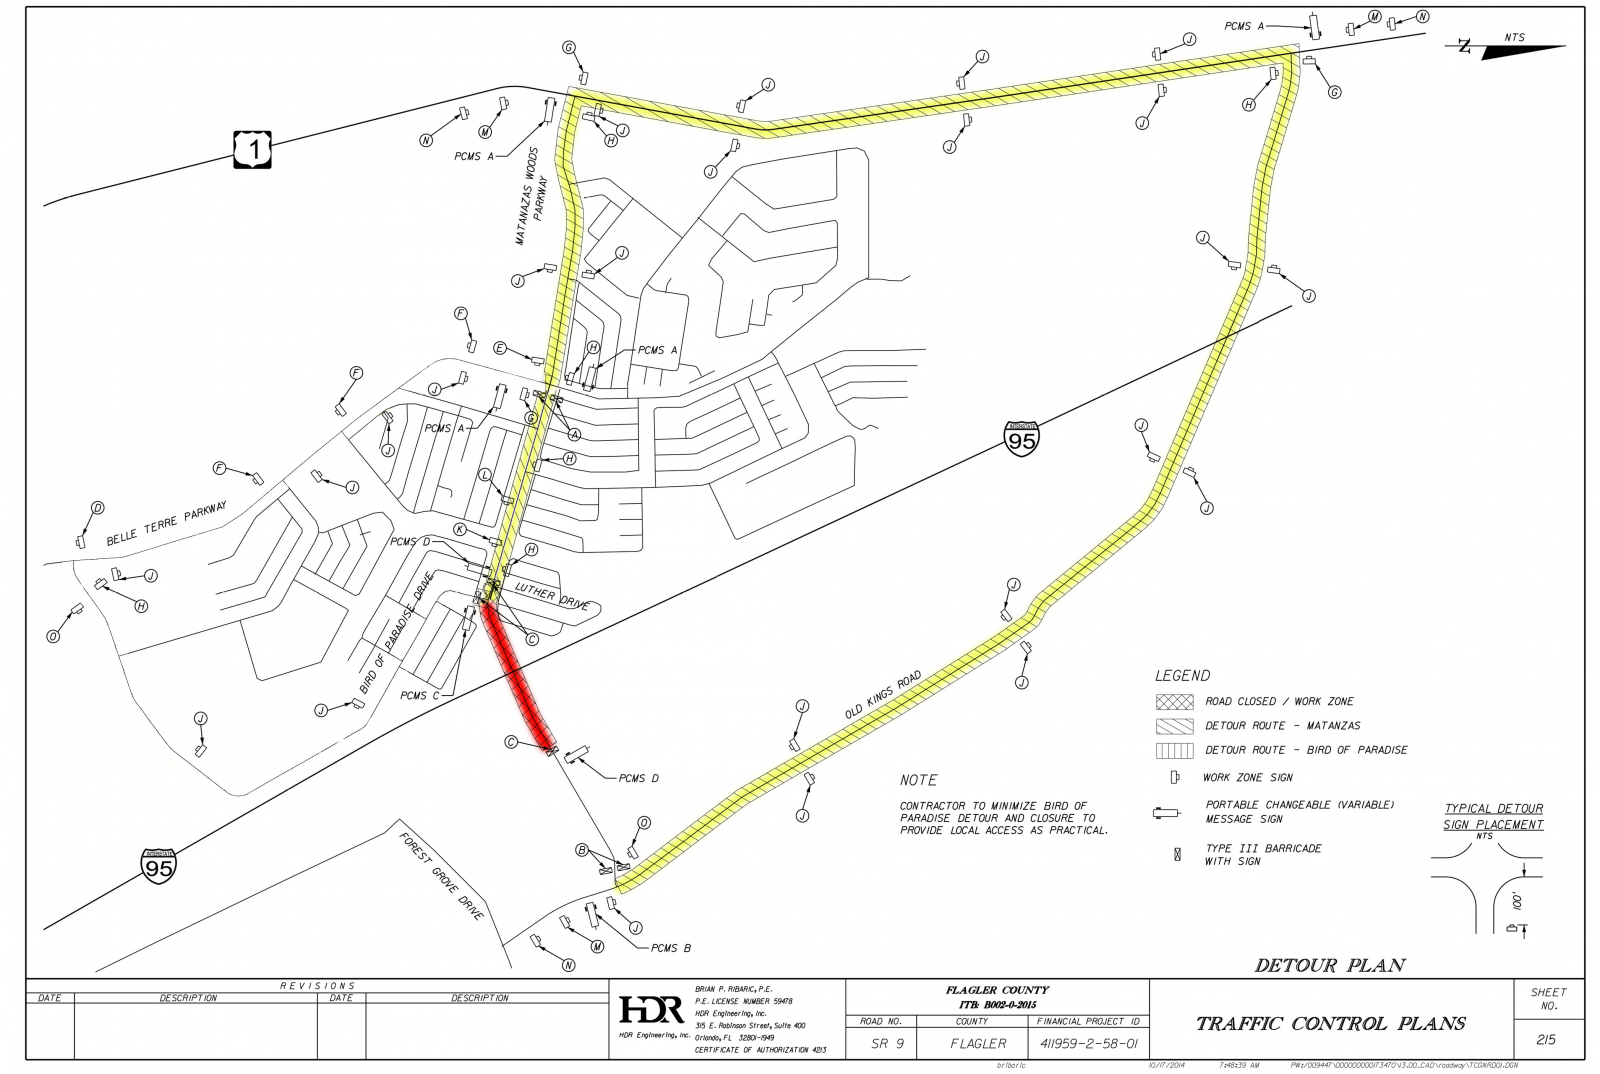 Matanzas Pkwy detour map 3-4-2016